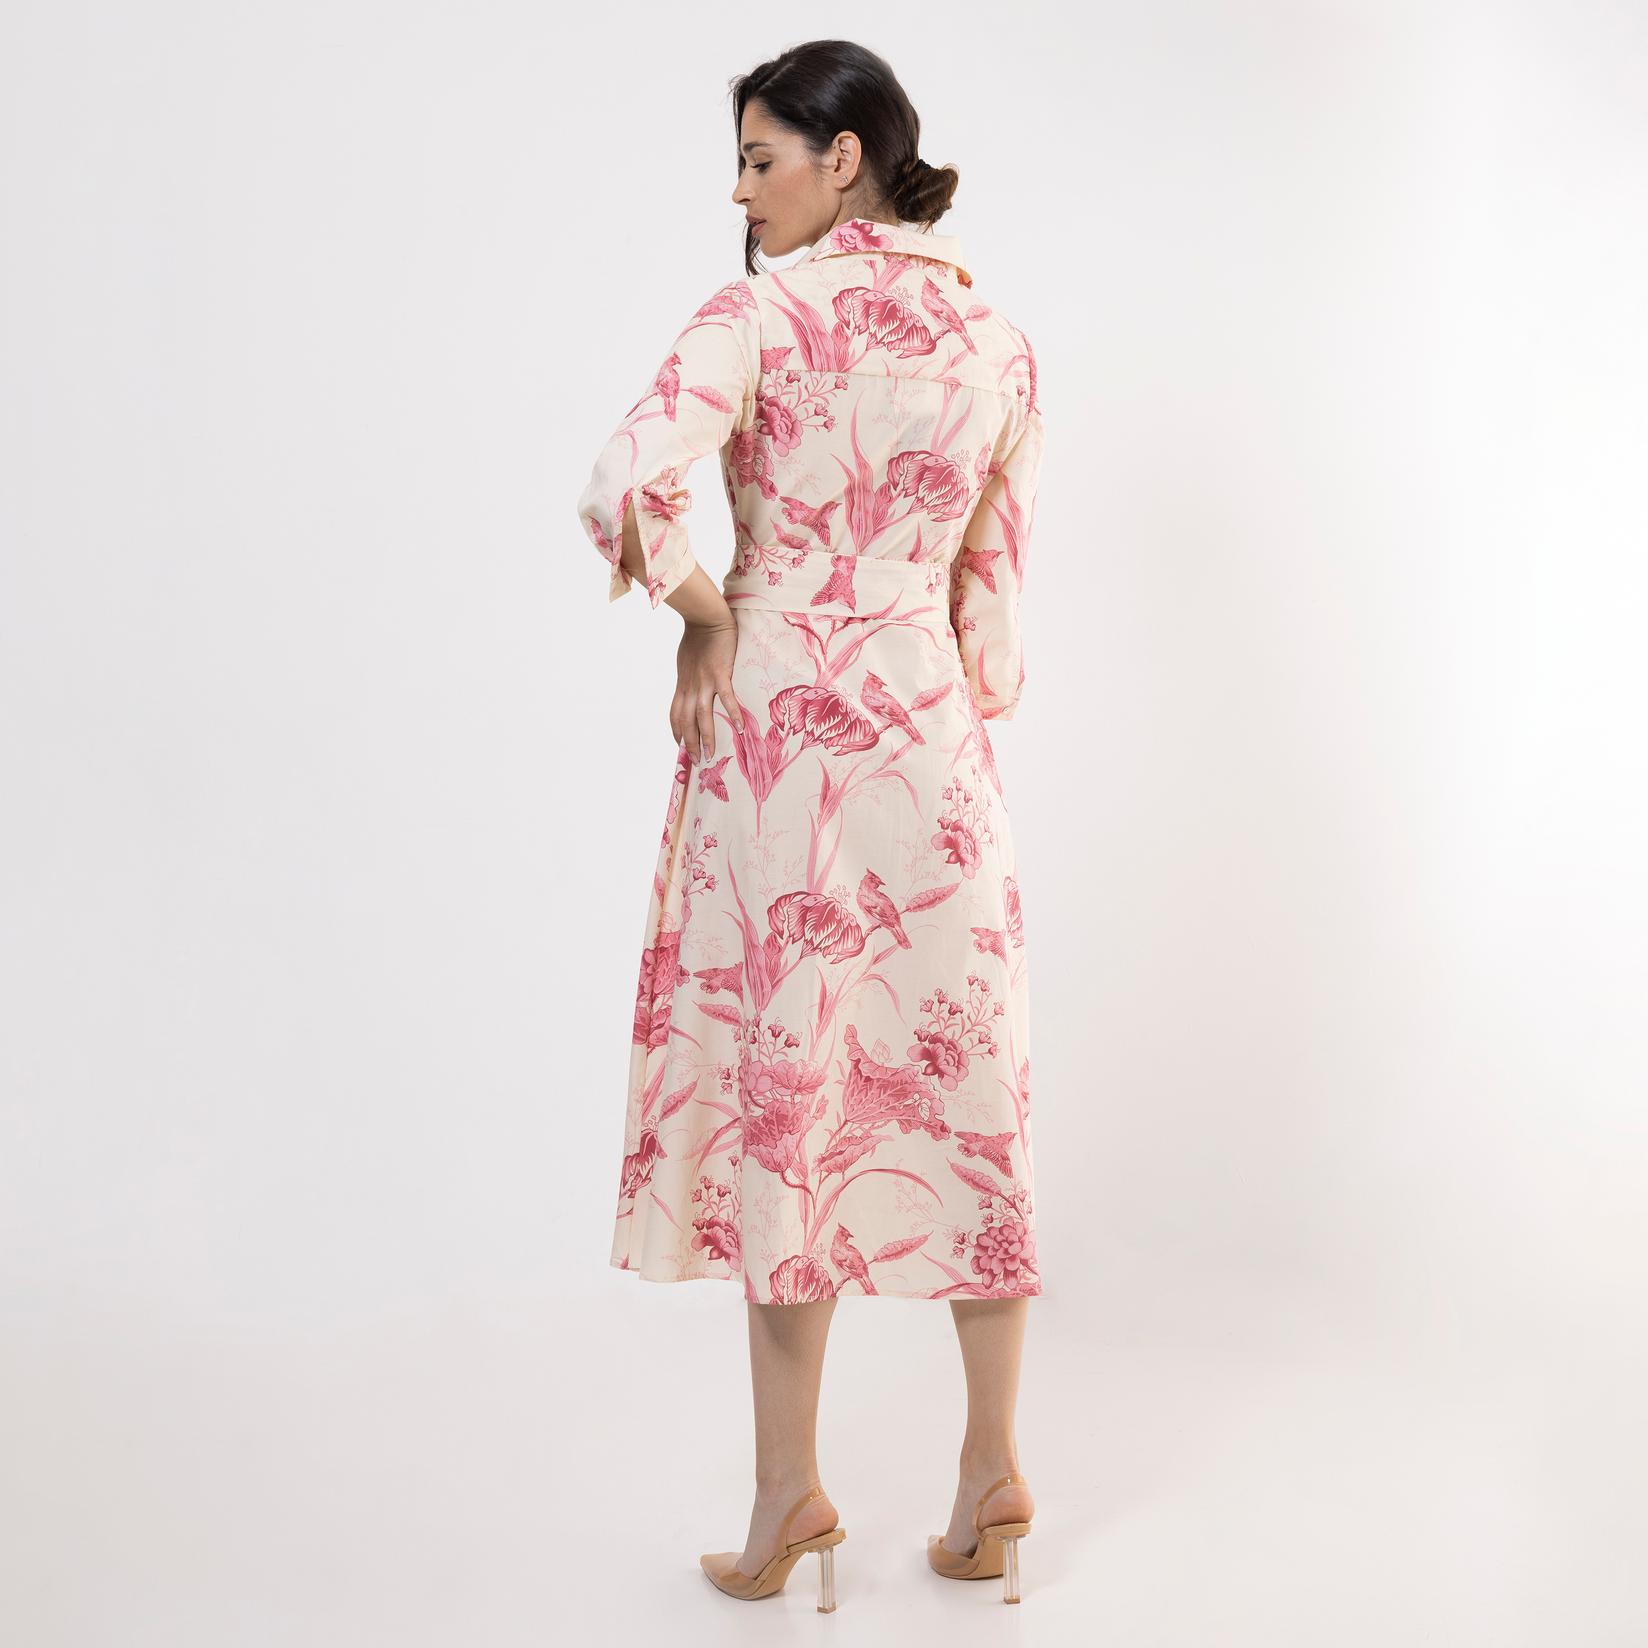 Selected image for FAME Ženska haljina sa cvetovima roze-bela